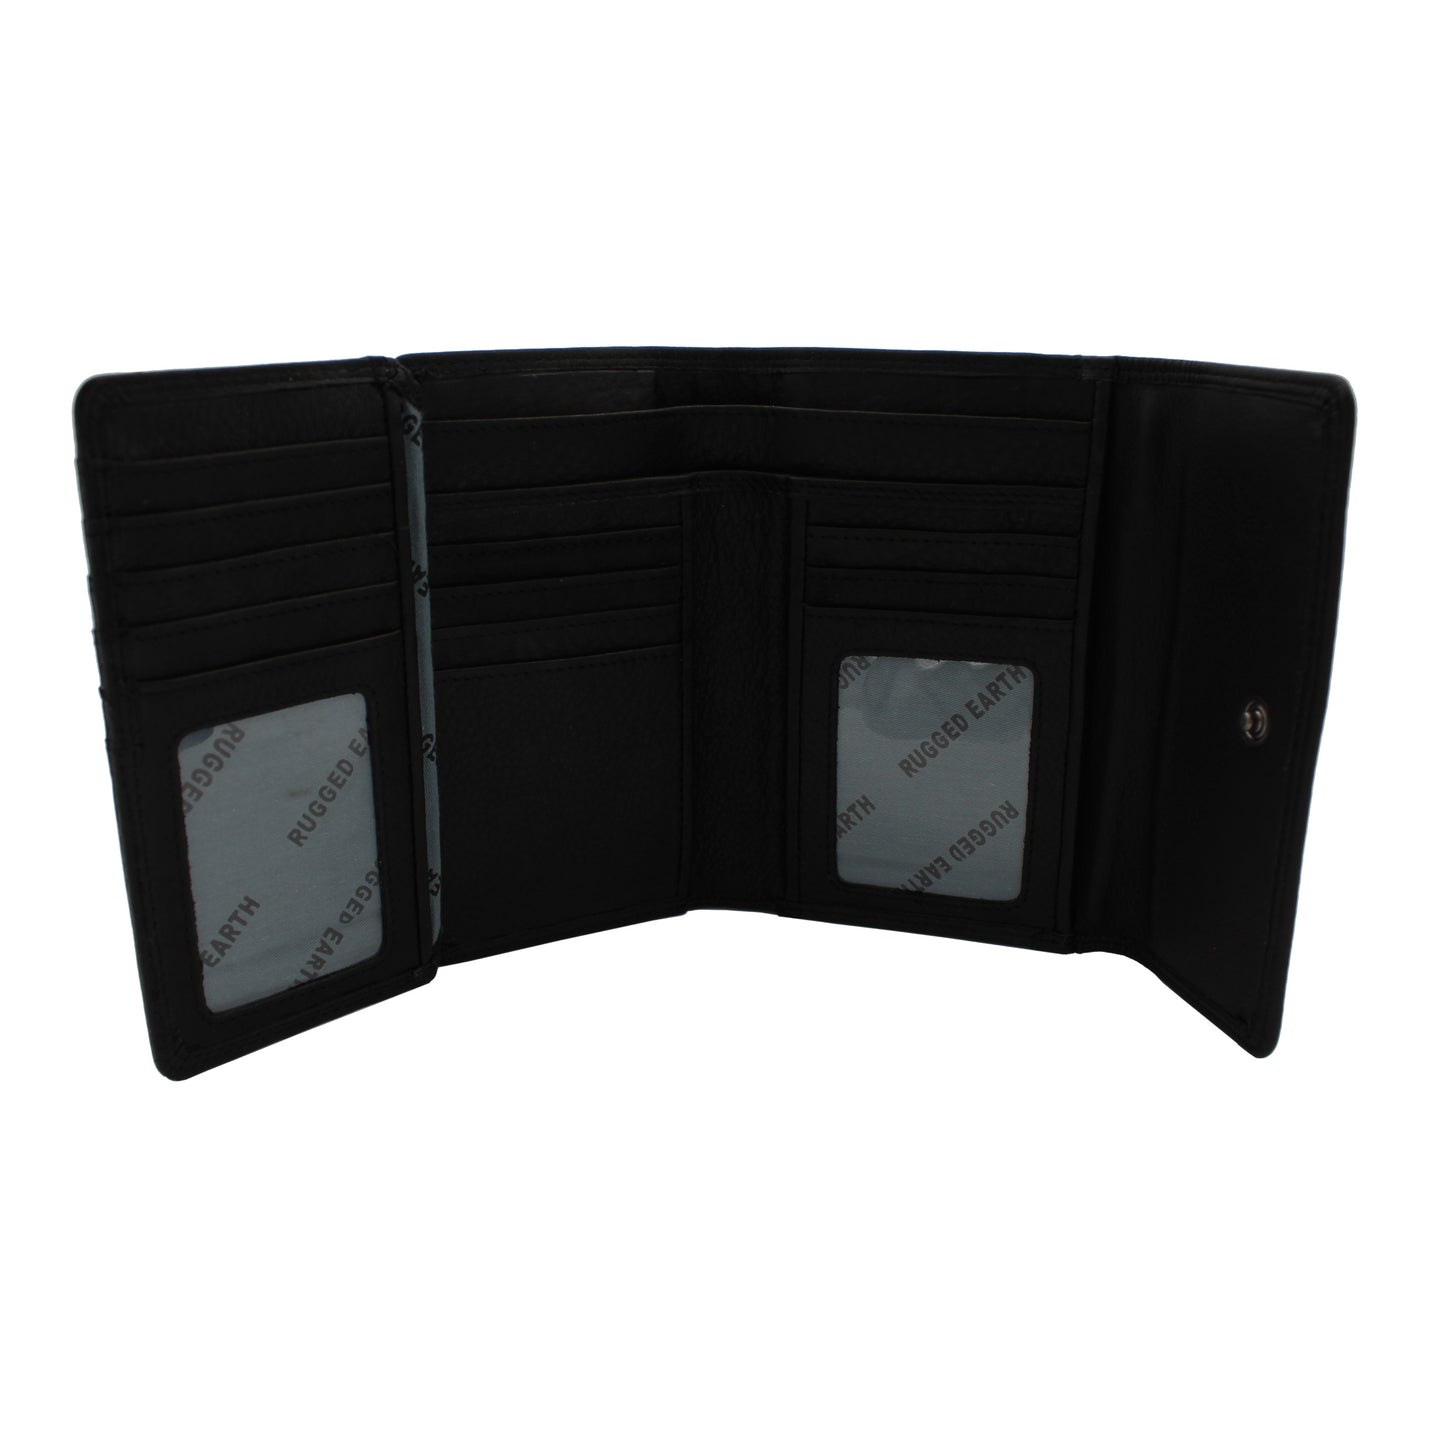 RE Leather Wallet - 4 Fold Wallet